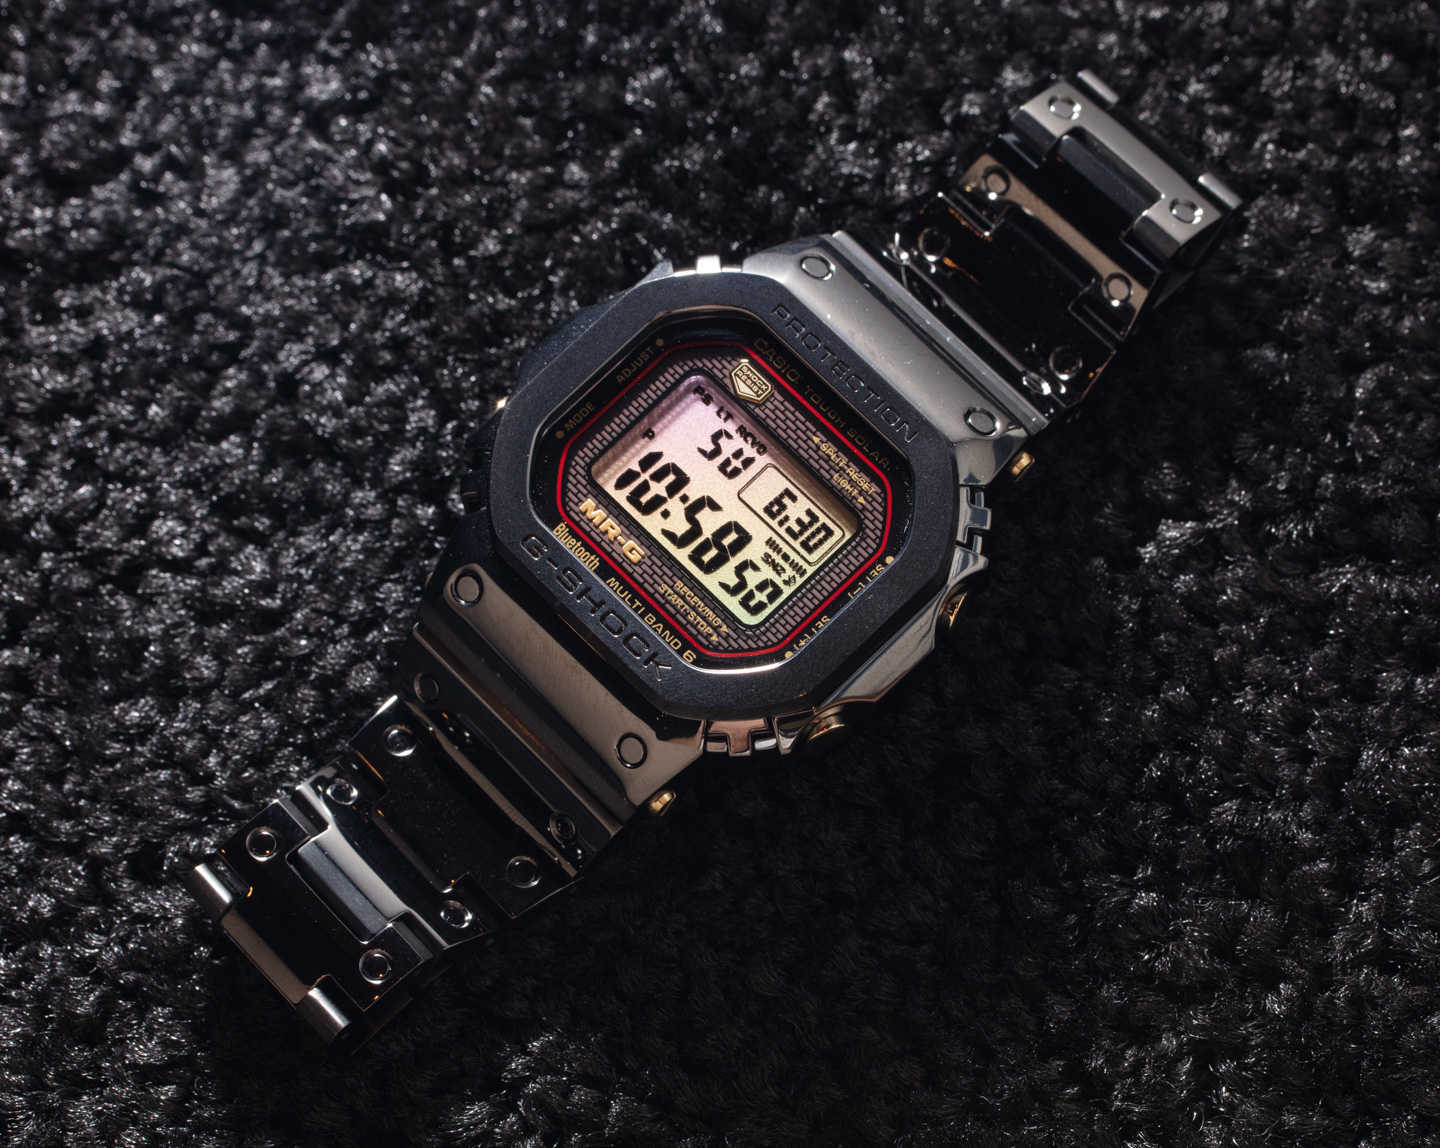 Высококачественные цифровые часы Casio G-Shock MRGB5000